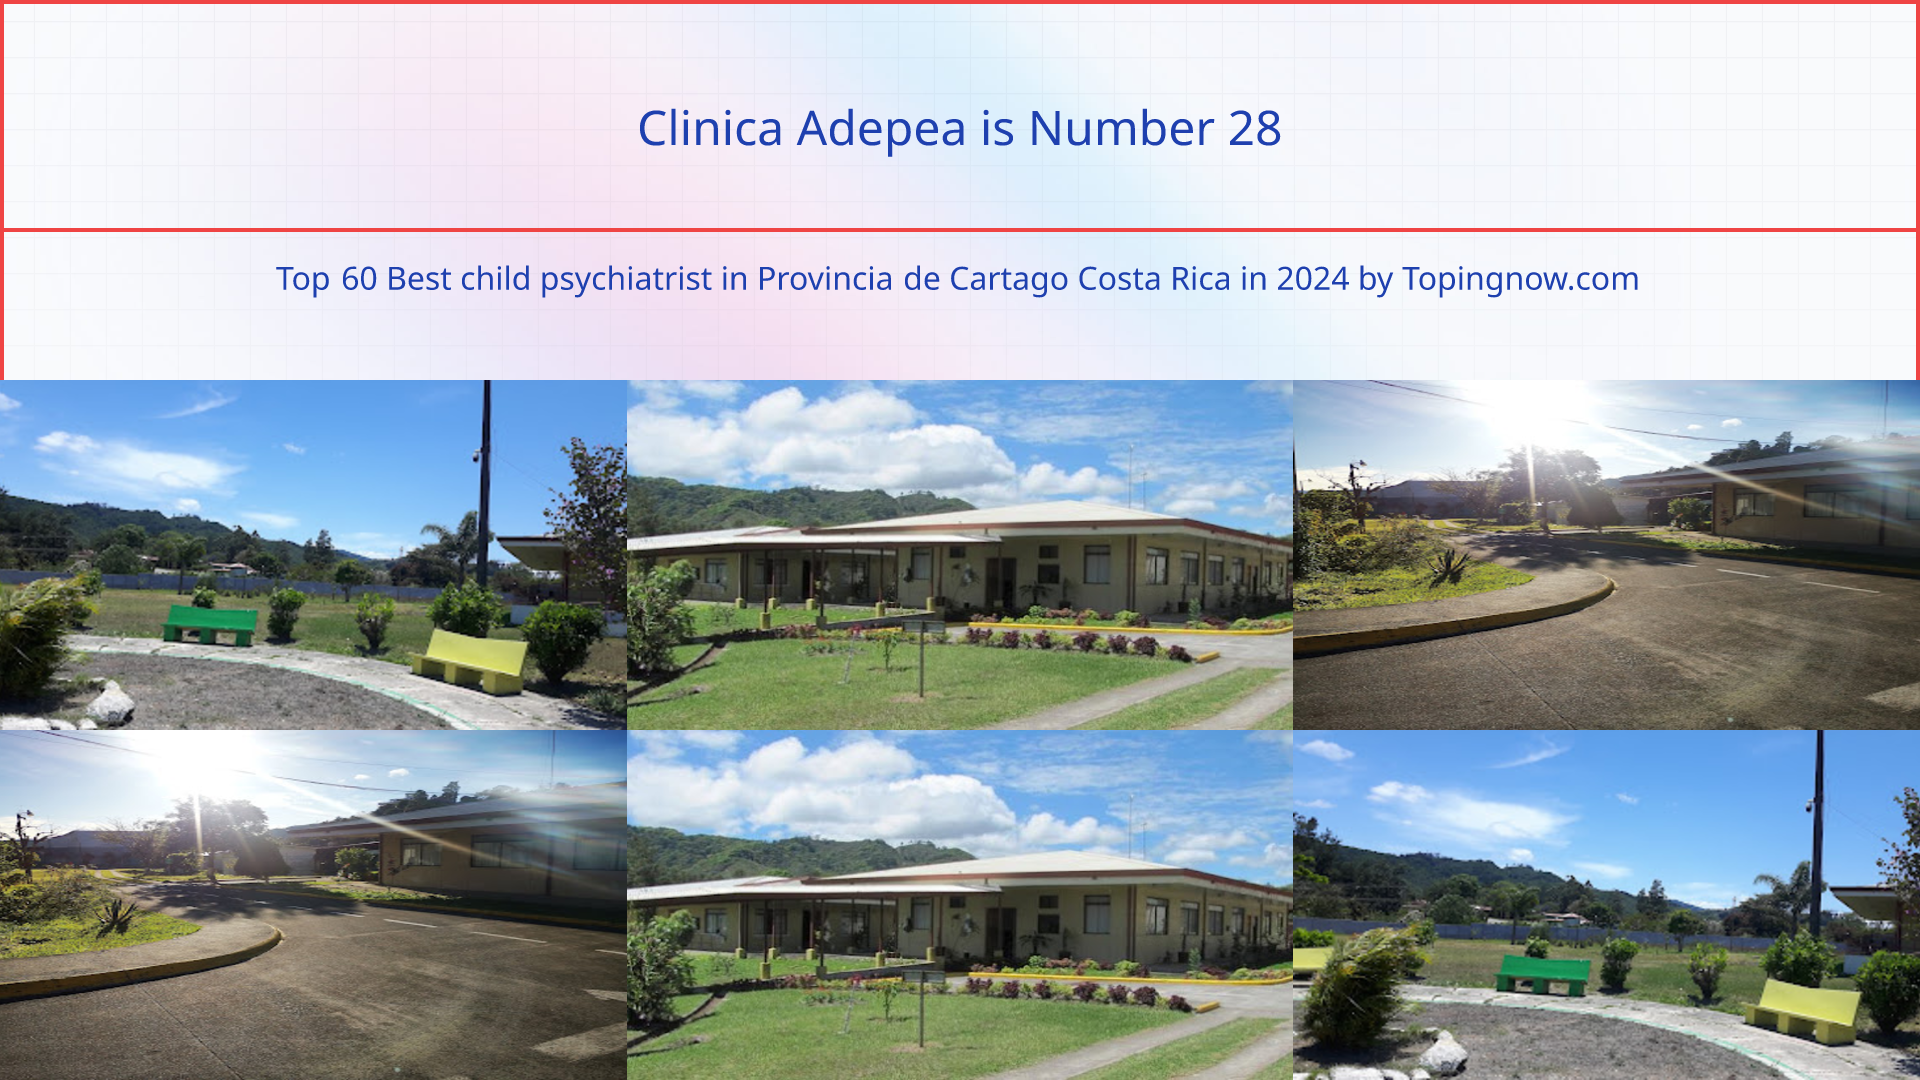 Clinica Adepea: Top 60 Best child psychiatrist in Provincia de Cartago Costa Rica in 2024